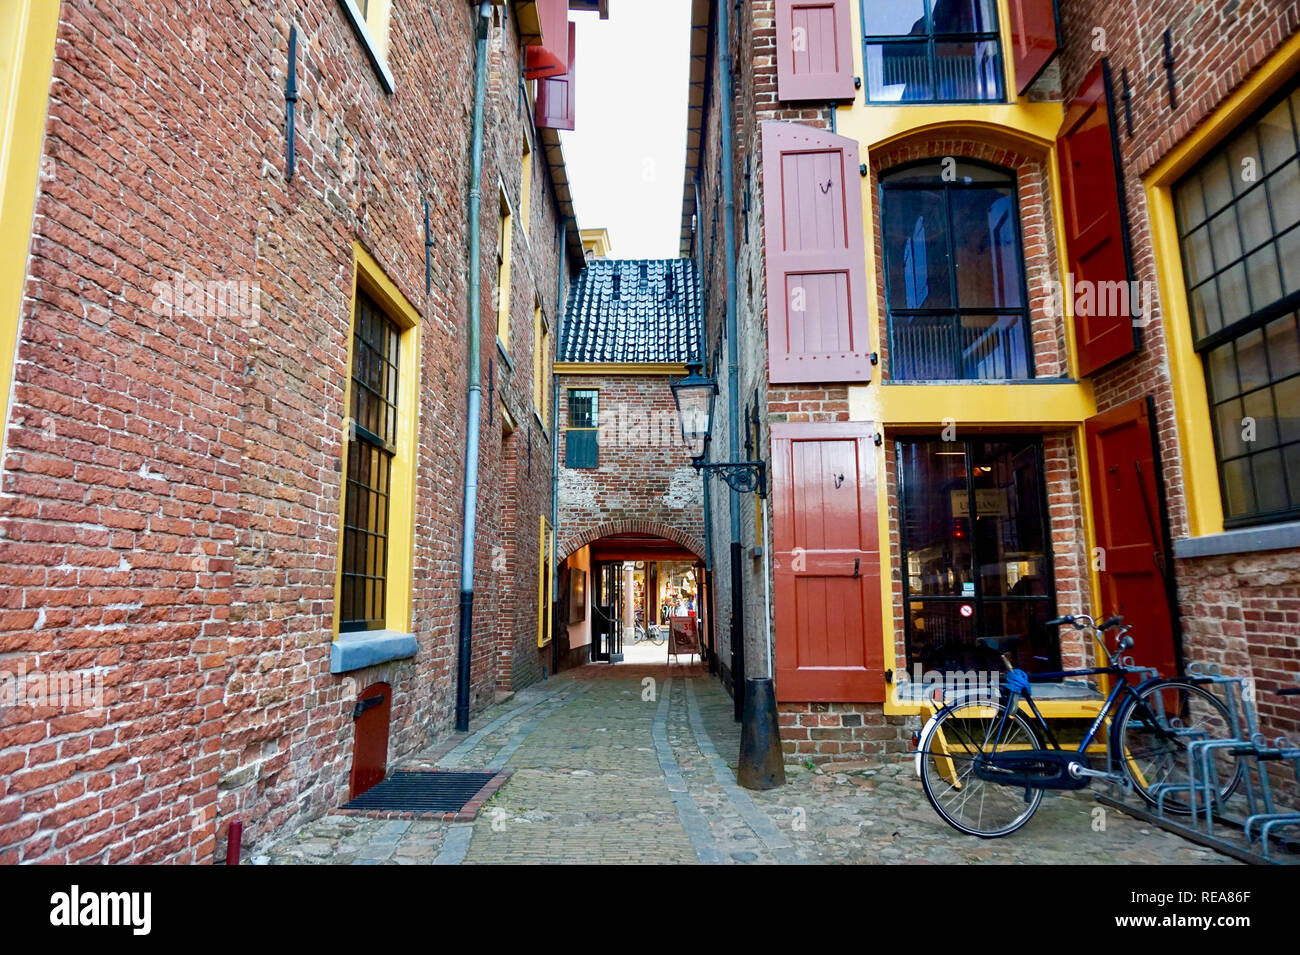 Groningen, Pays-Bas : restauré édifices médiévaux en Europe, peint en rouge vif et jaune garniture. Fenêtre traditionnelle (trappes) volets & co Banque D'Images